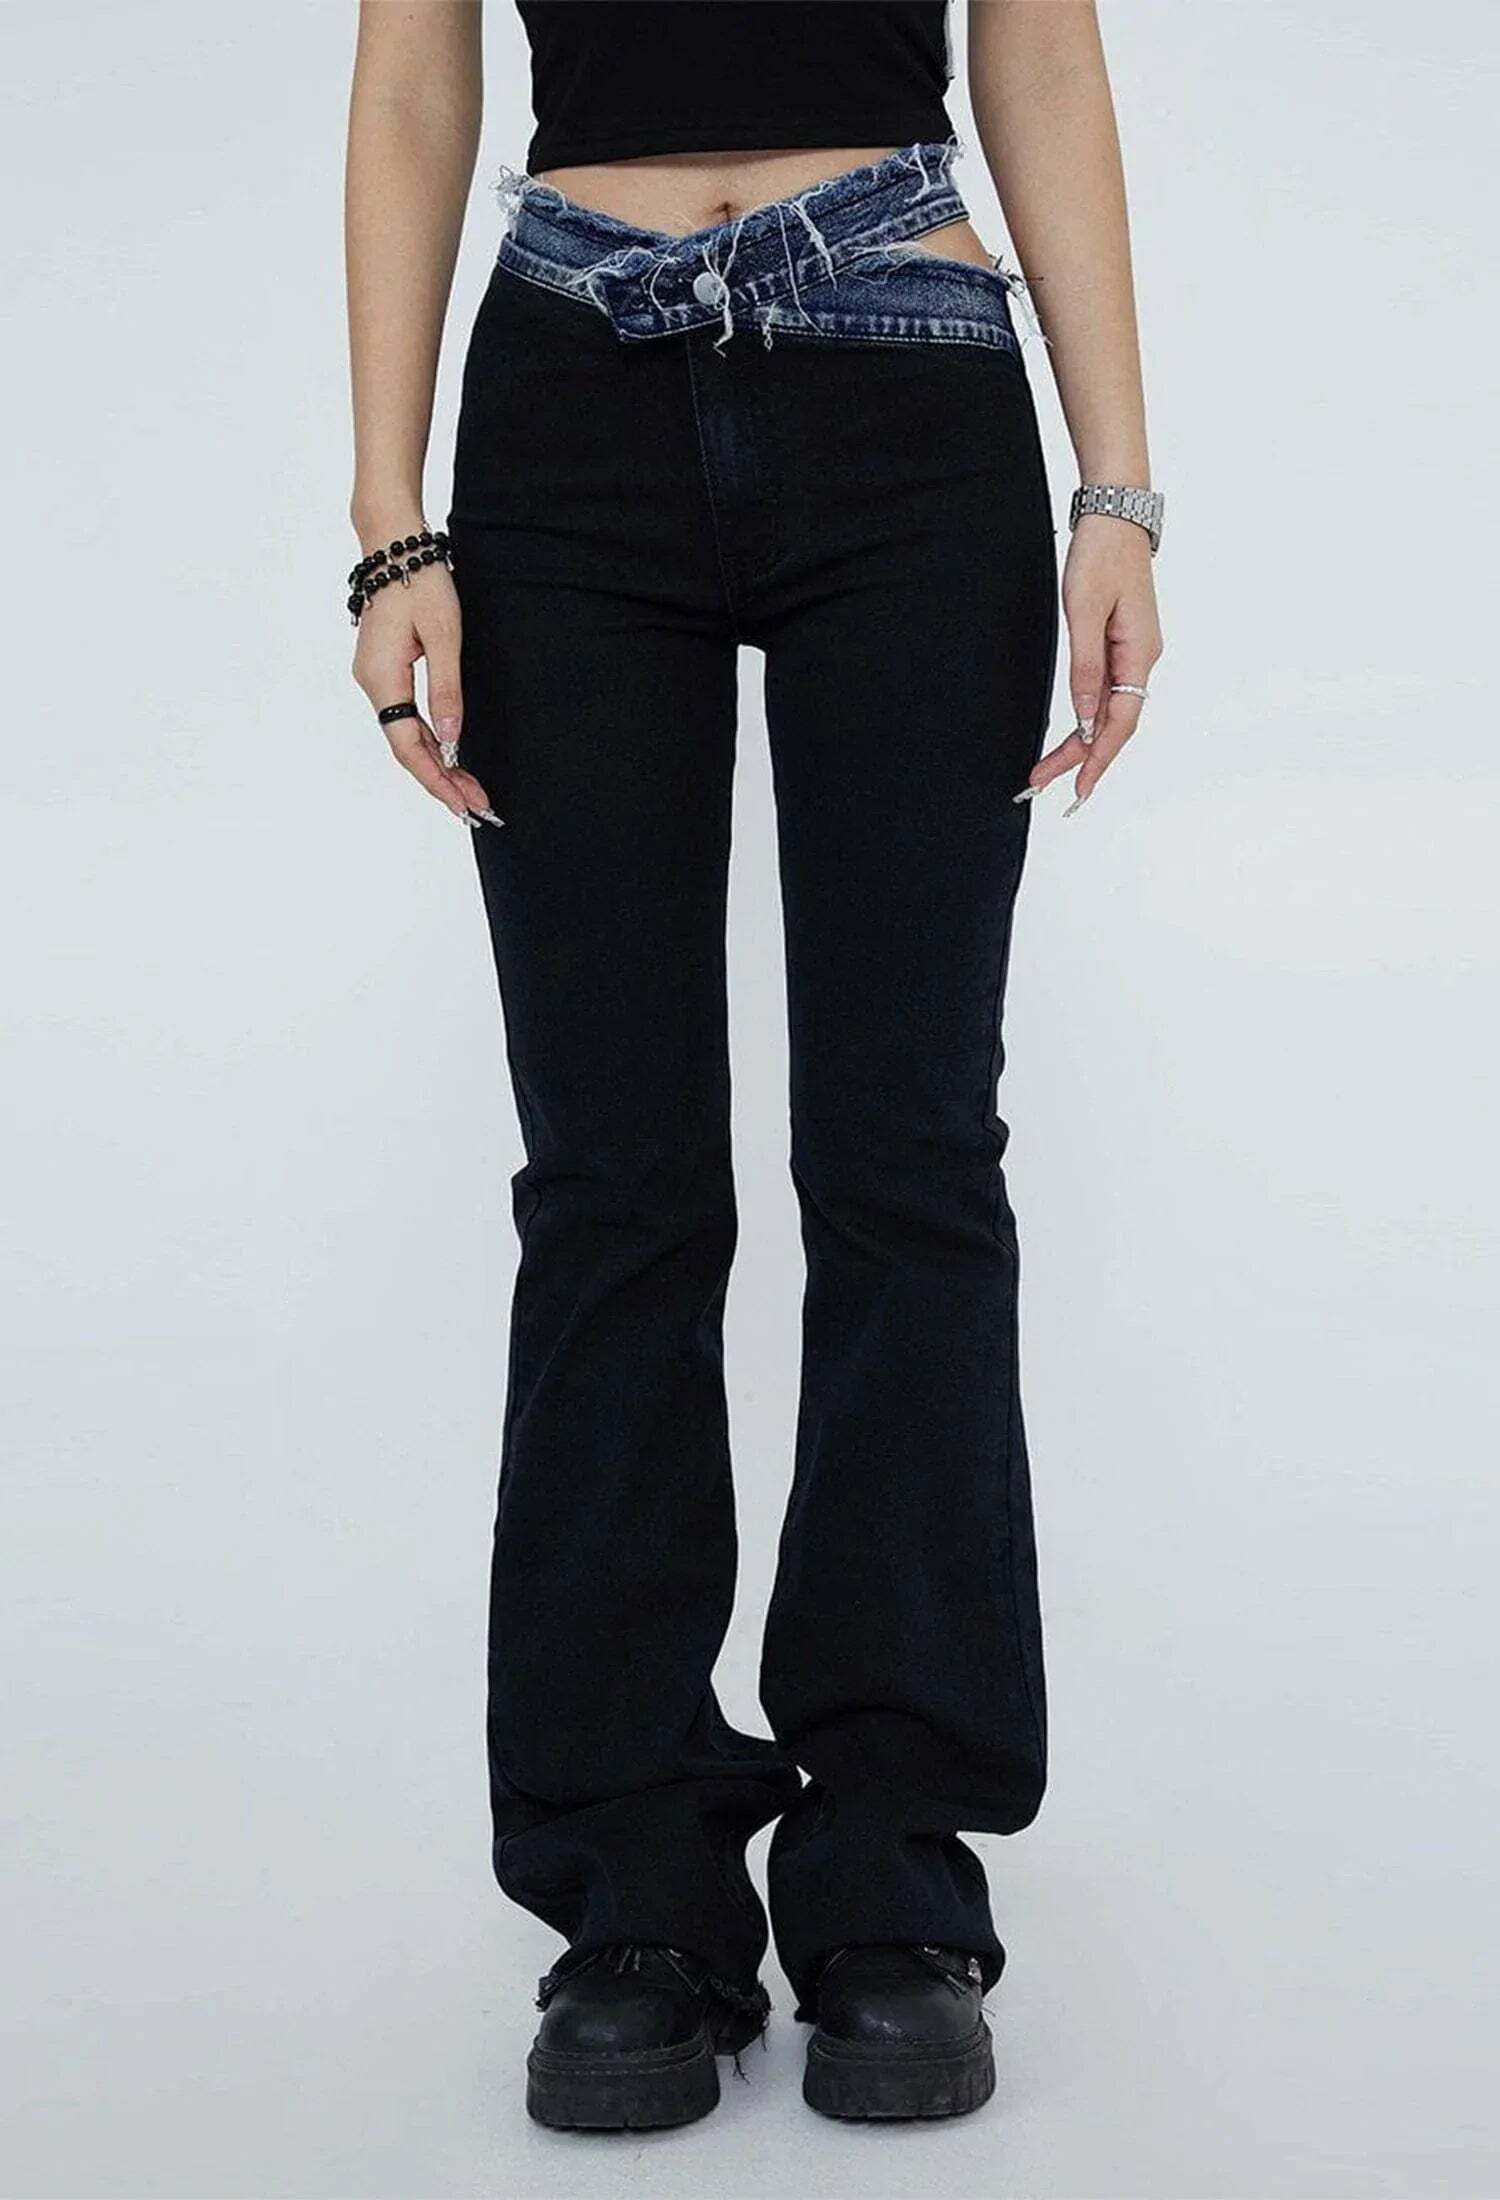 distressed slim fit jeans edgy vintage streetwear 5588